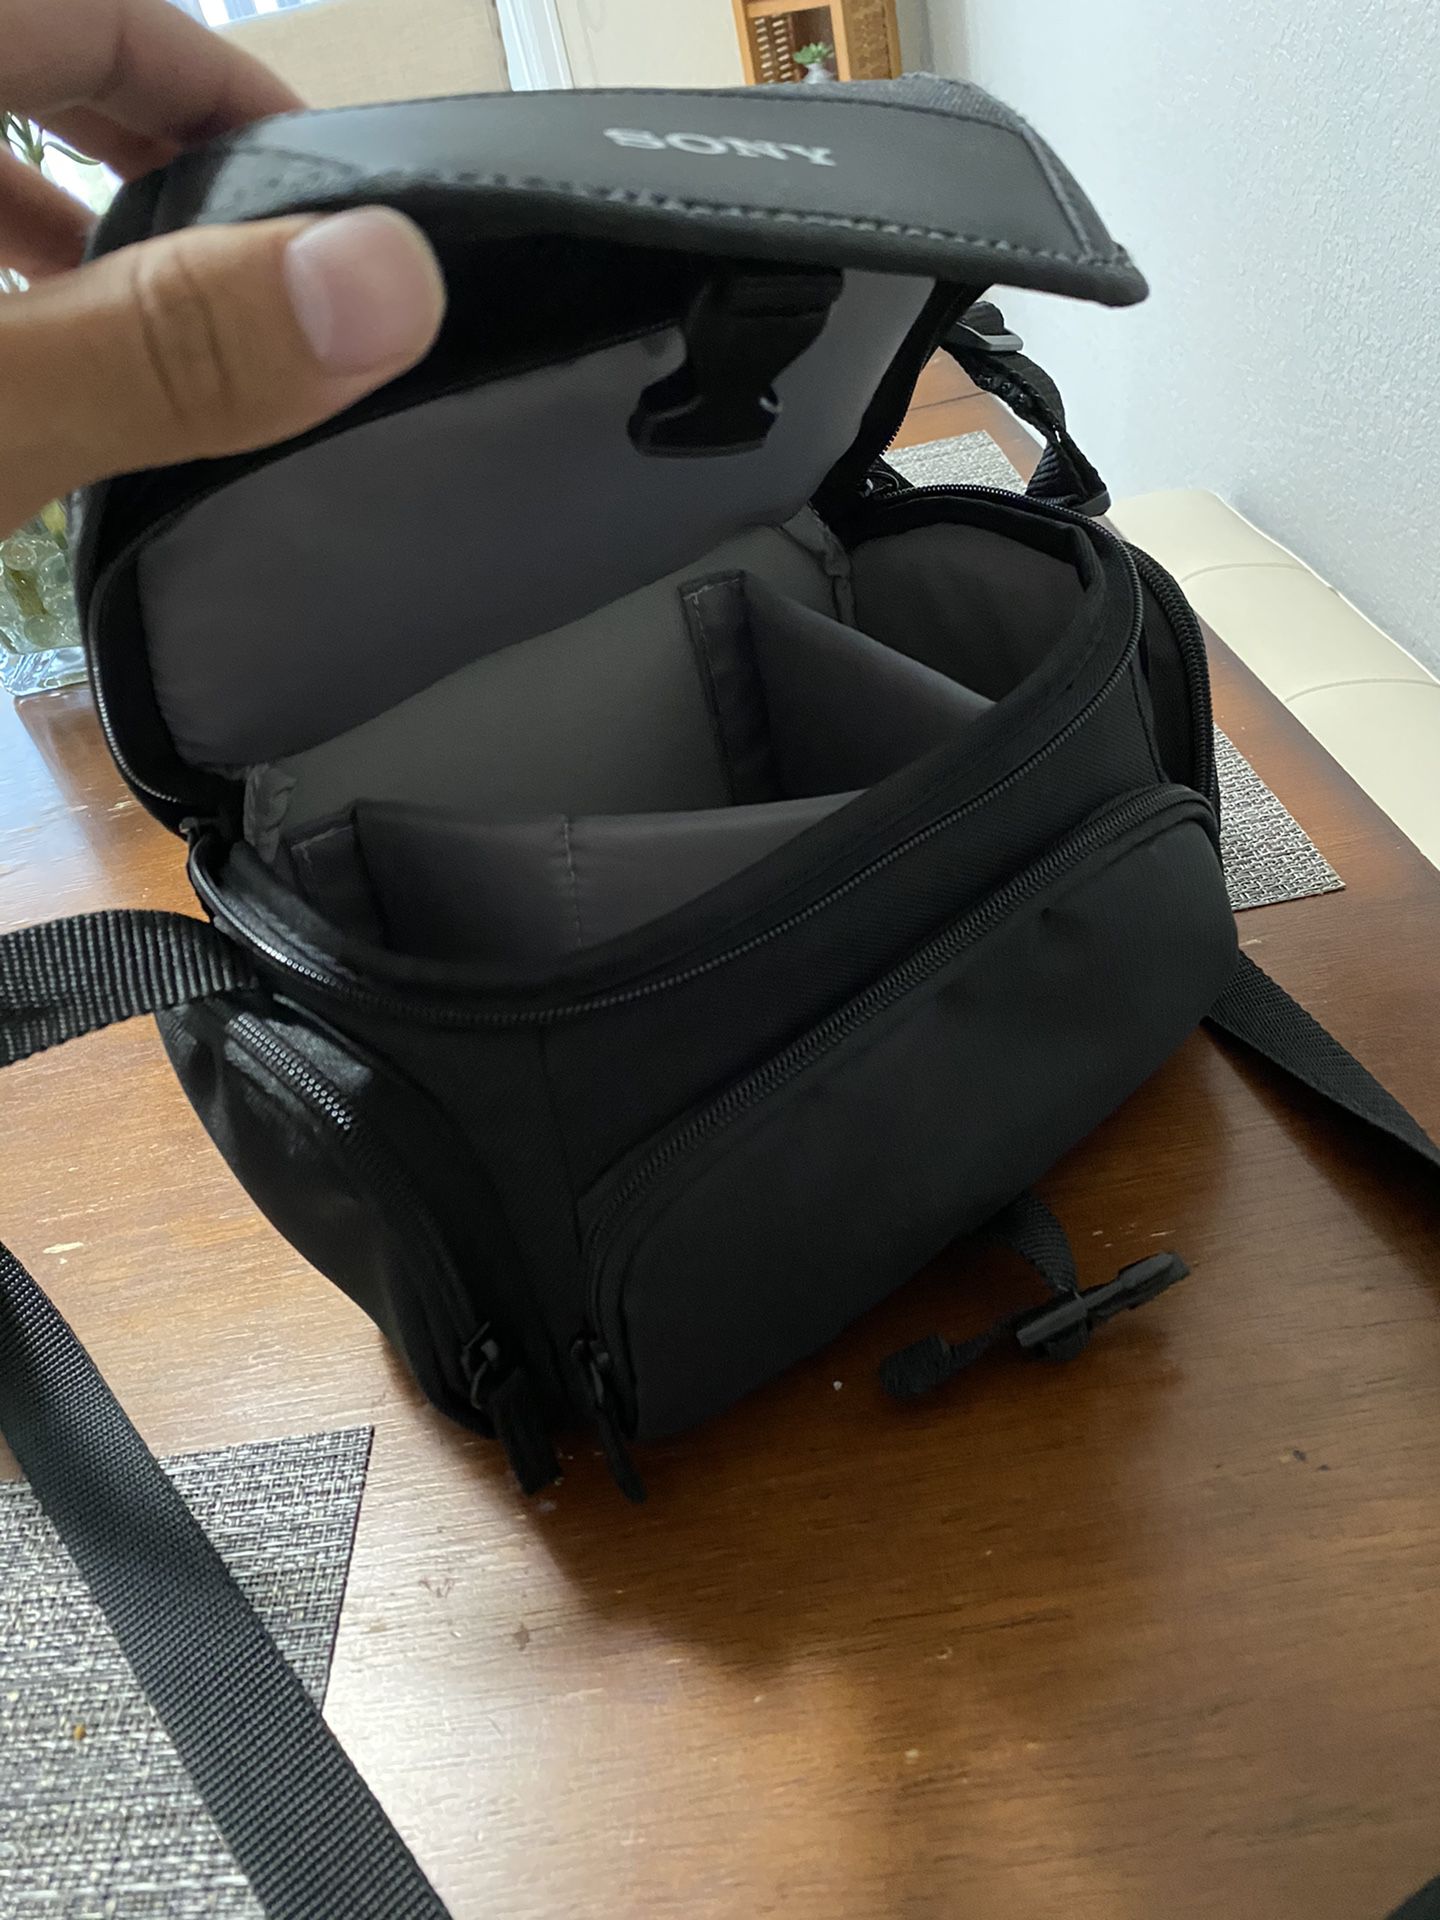 Sony camera bag brand new